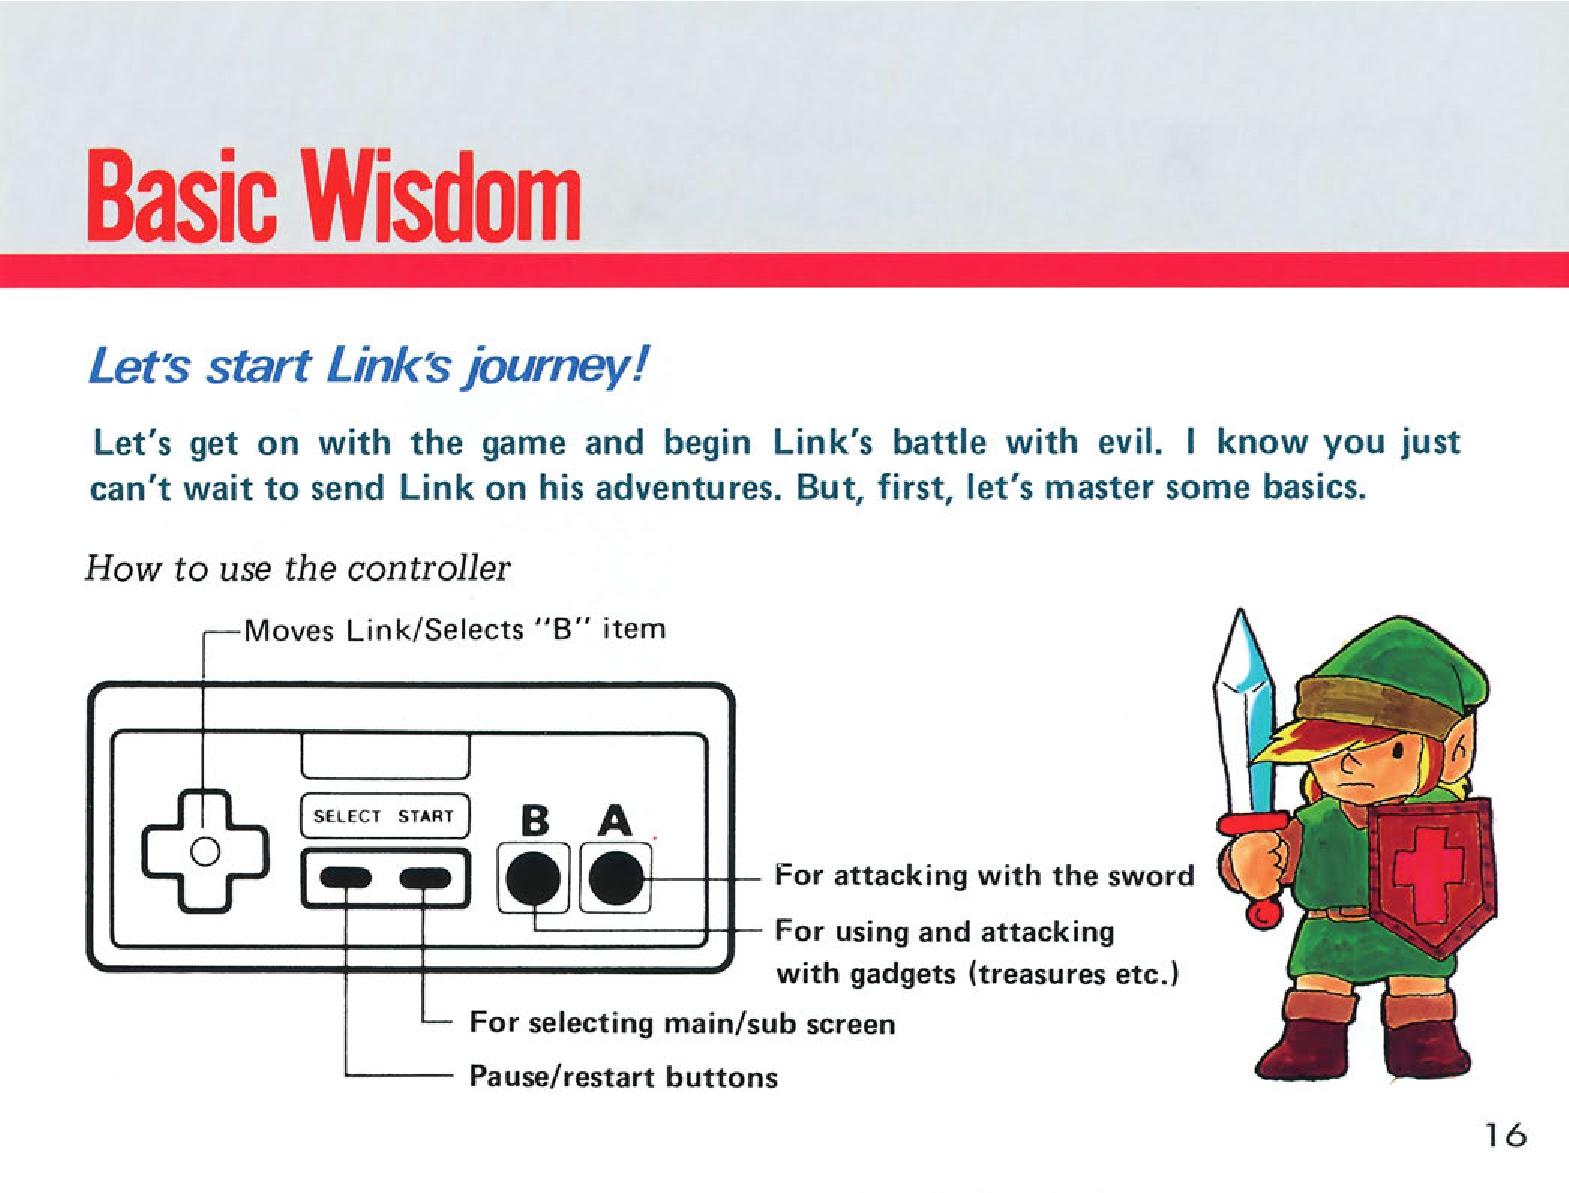 Zelda 1 (the legend of zelda) : Manual of nes version